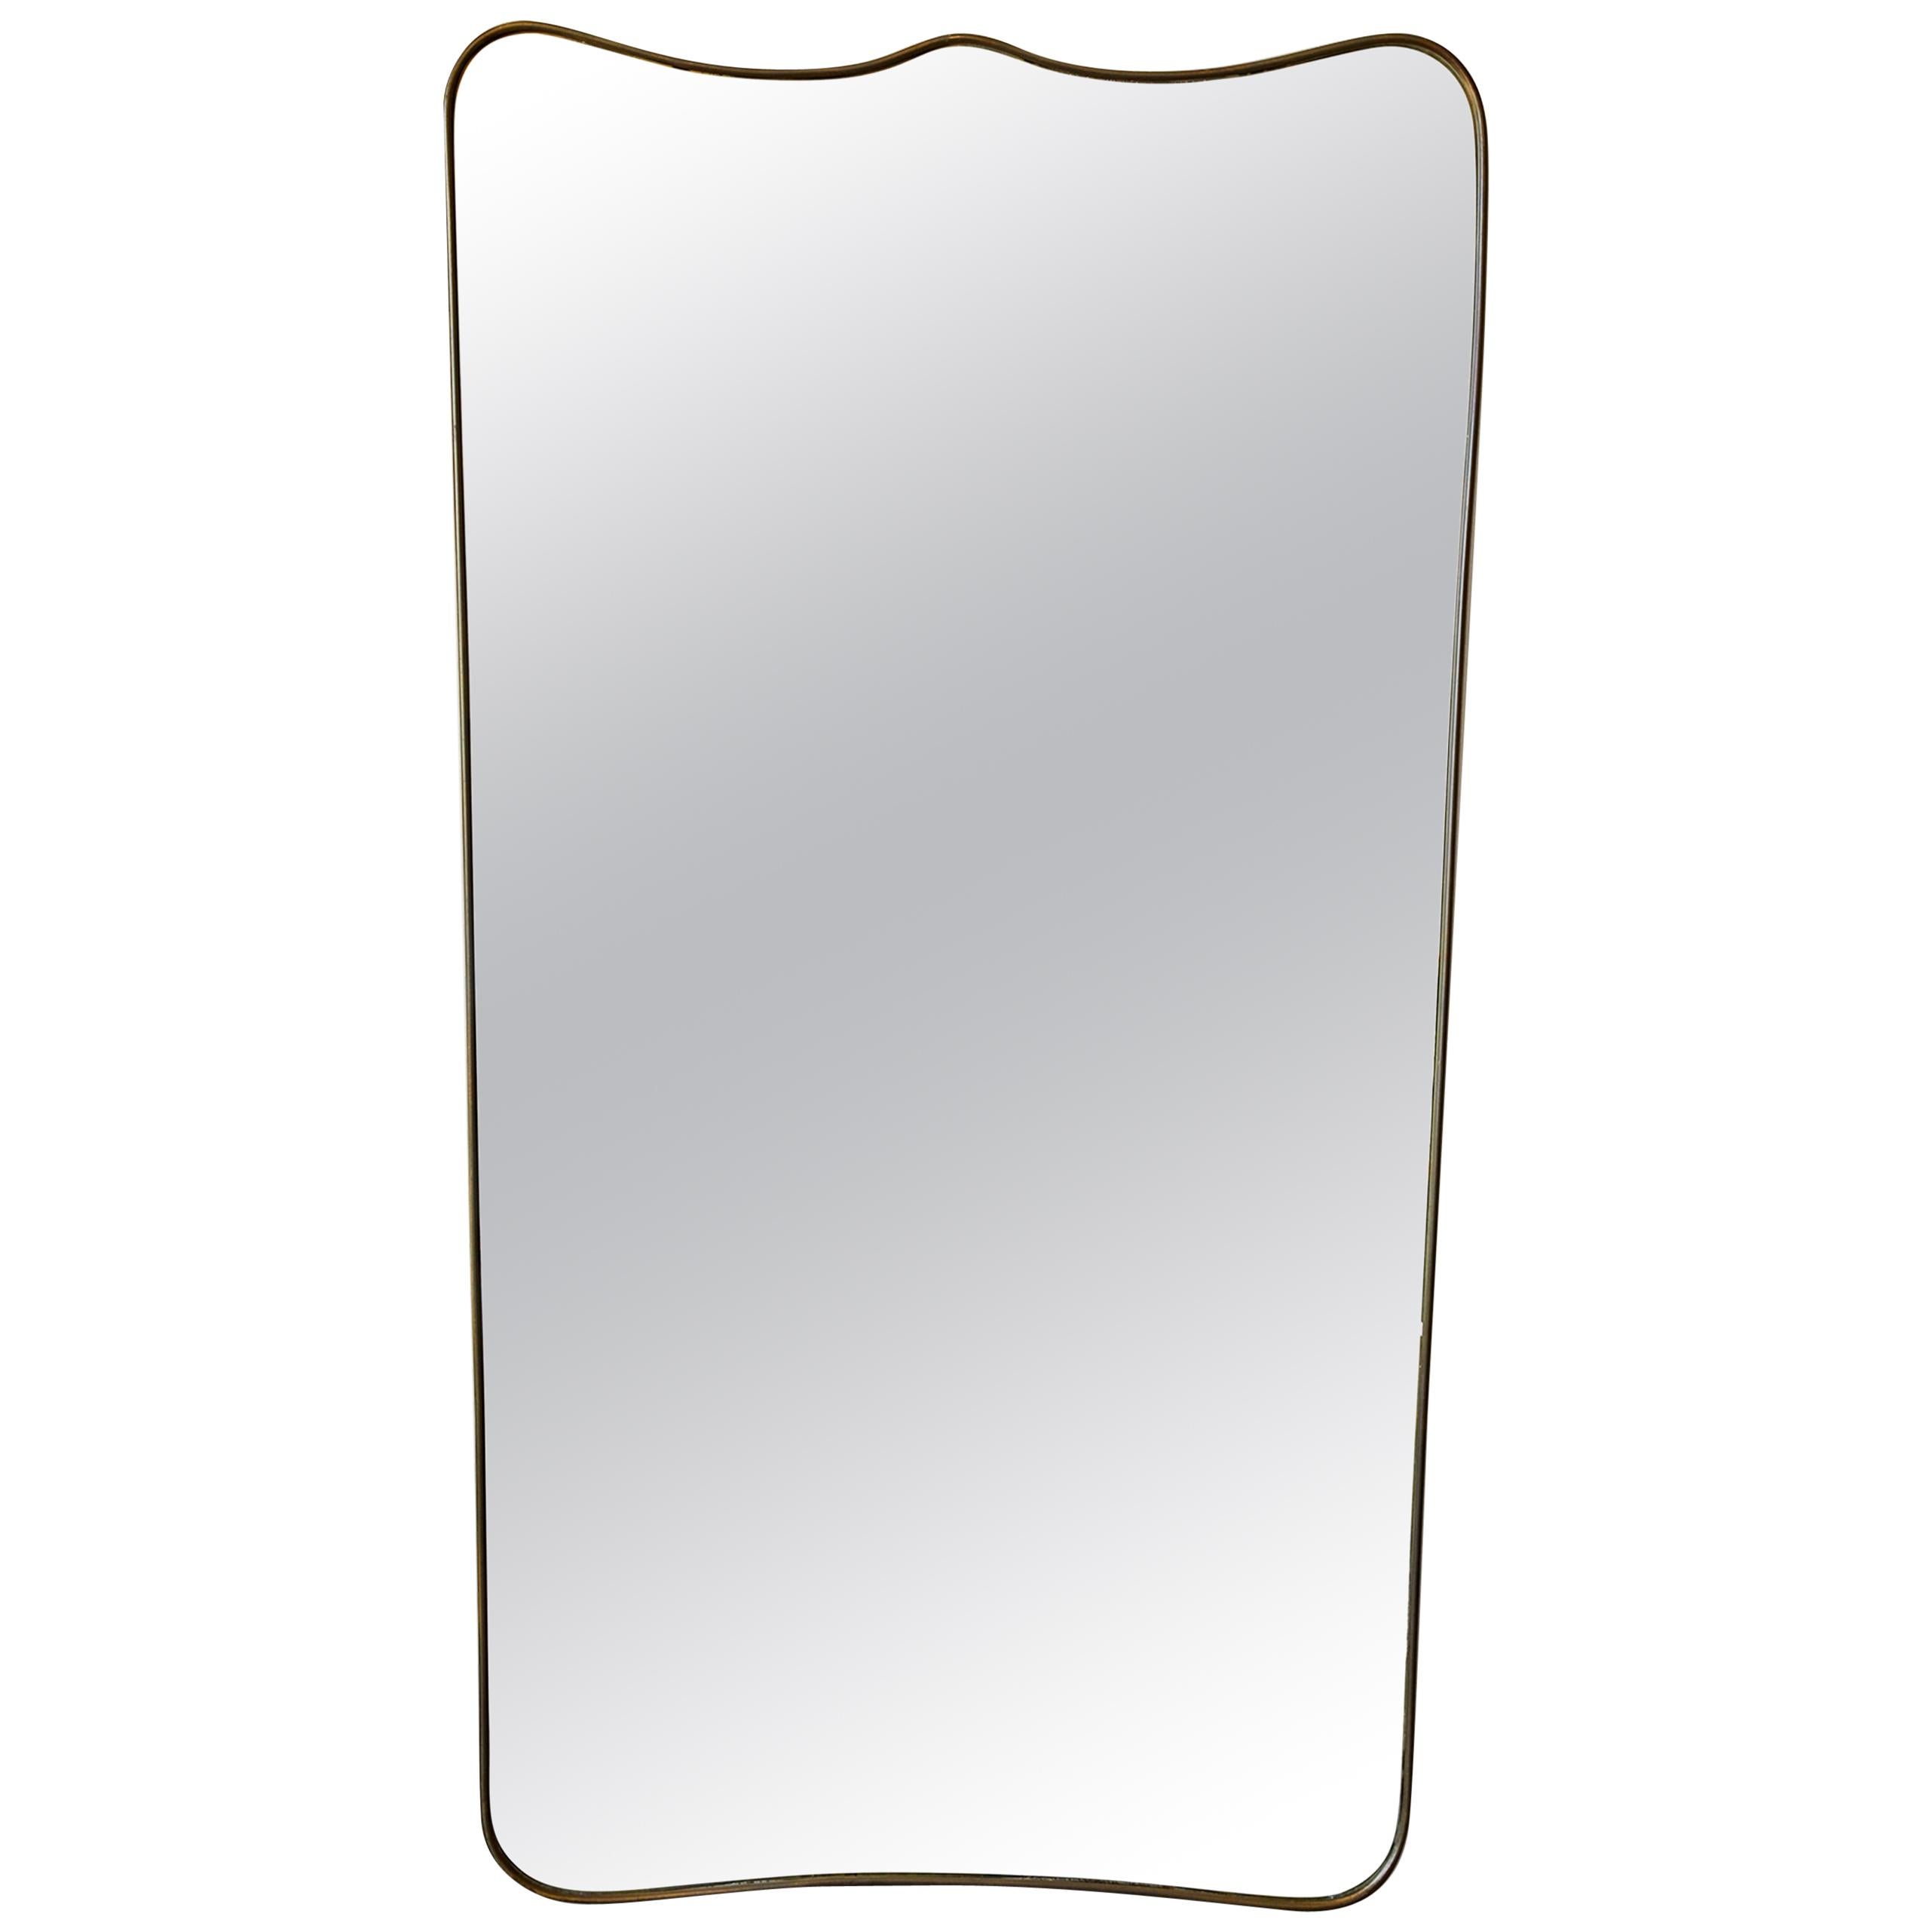 Oversize Italian Brass Mirror